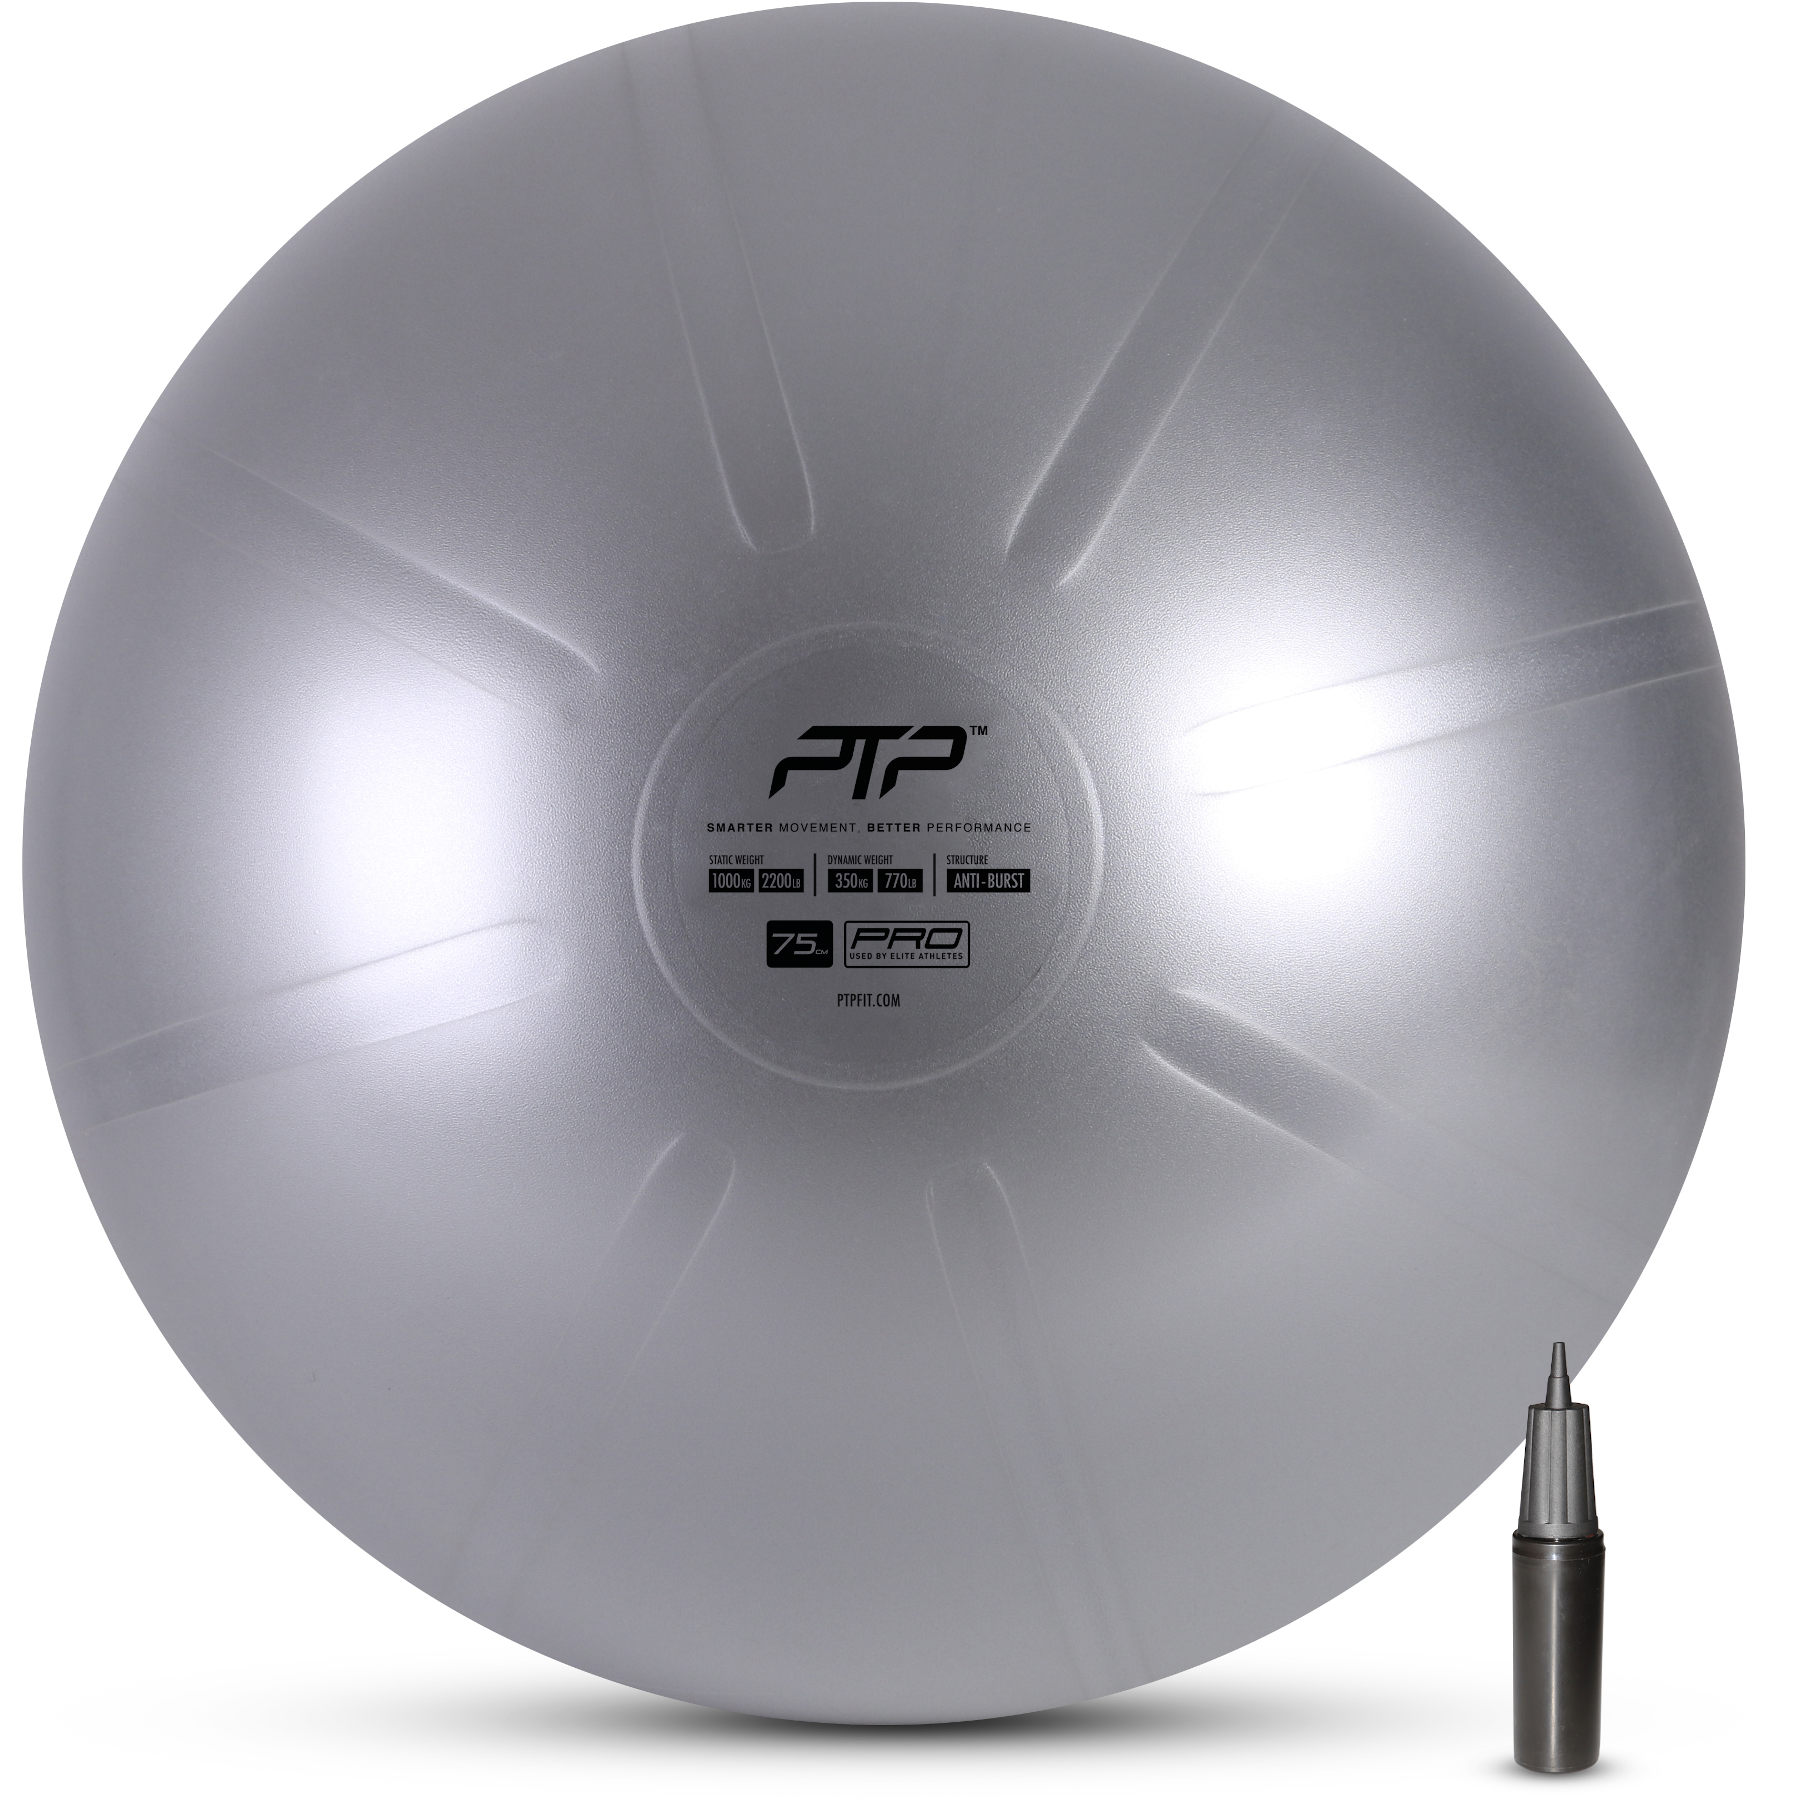 Produktbild von PTP Coreball 75cm Gymnastikball &amp; Pumpe - steel grey